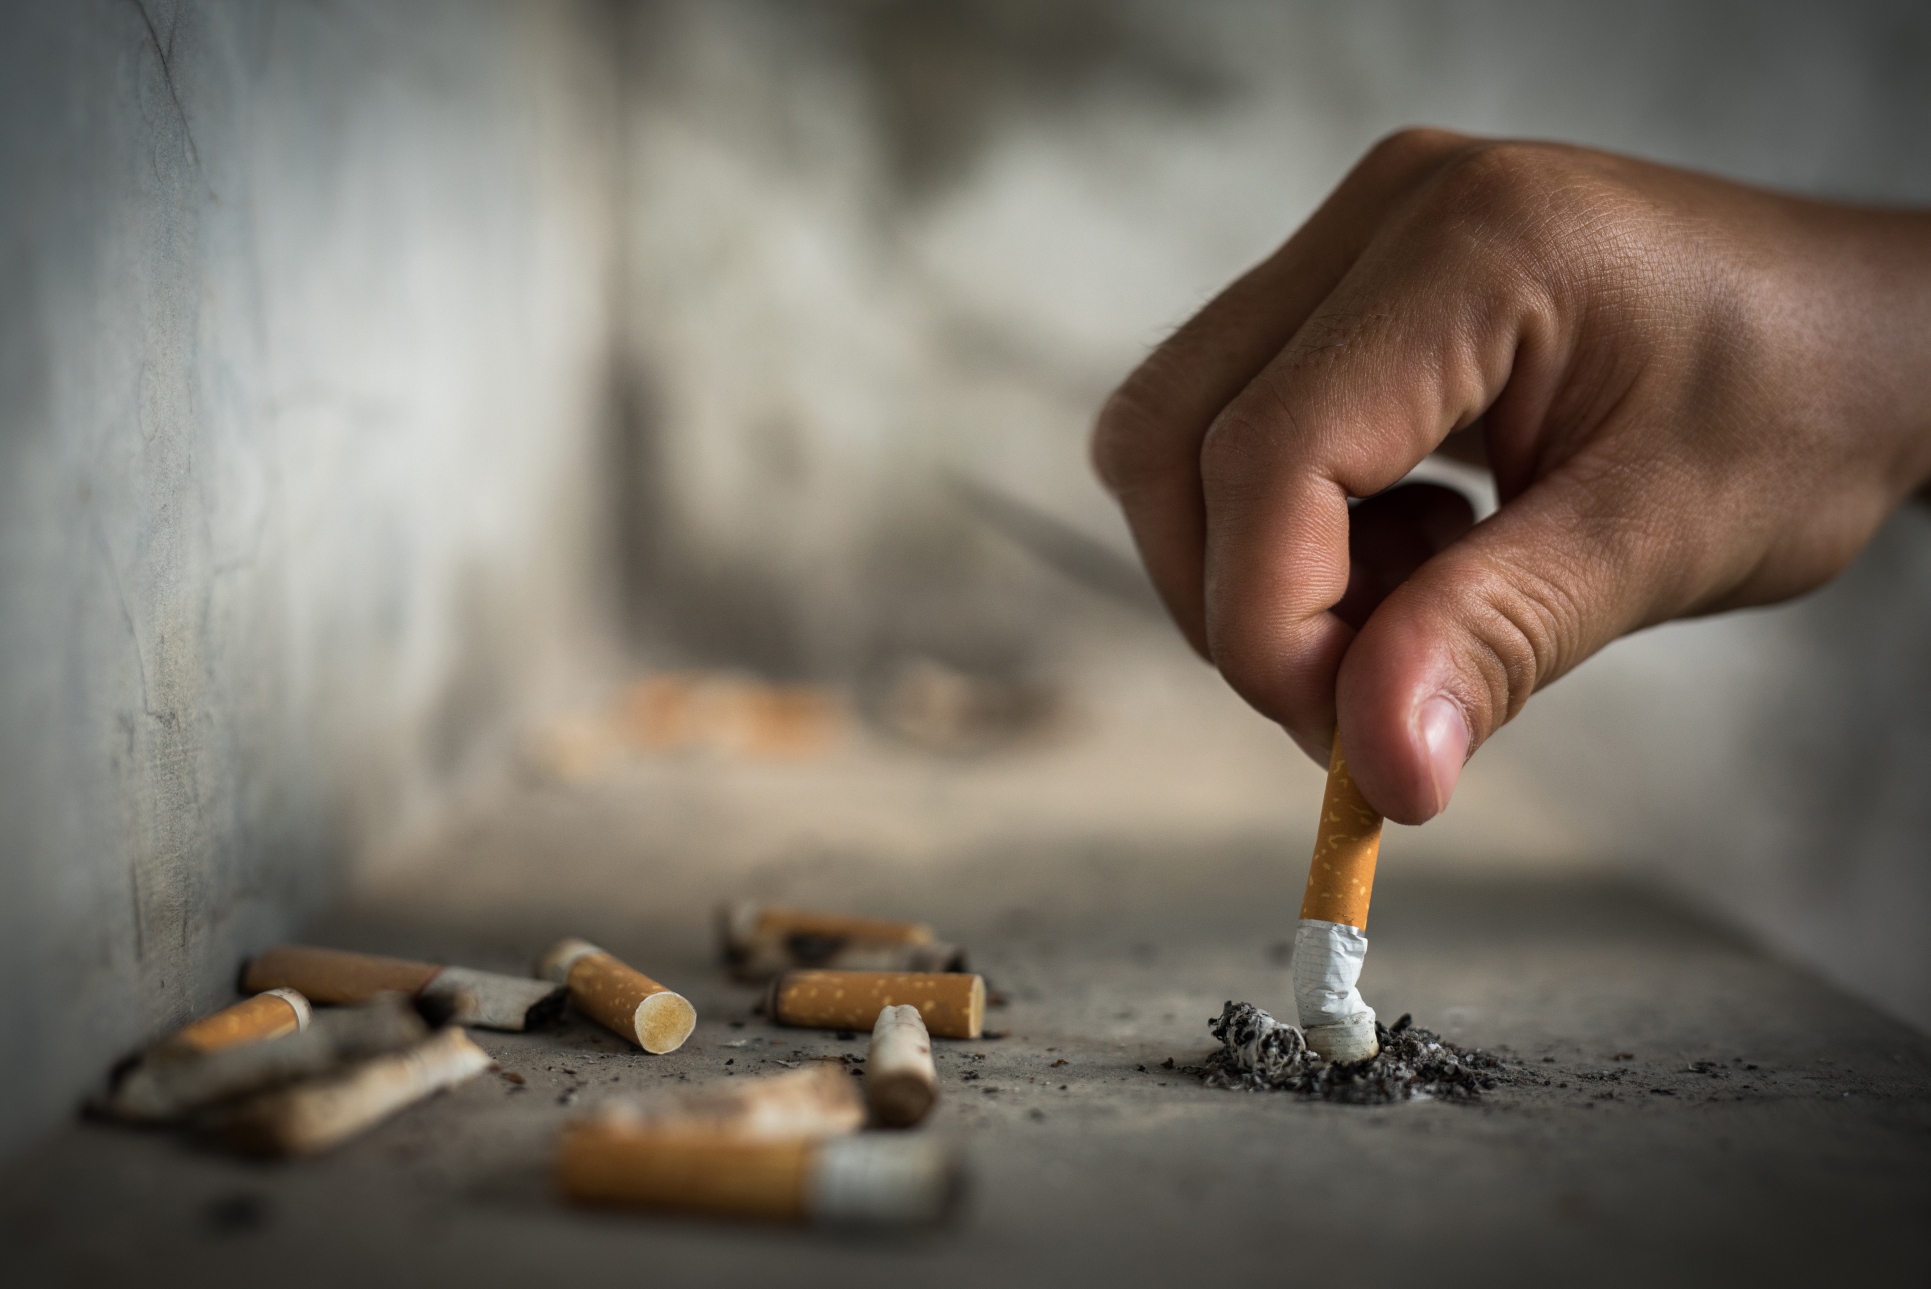 Día Mundial sin Tabaco: ¿Qué consecuencias tiene el consumo de tabaco en la salud?